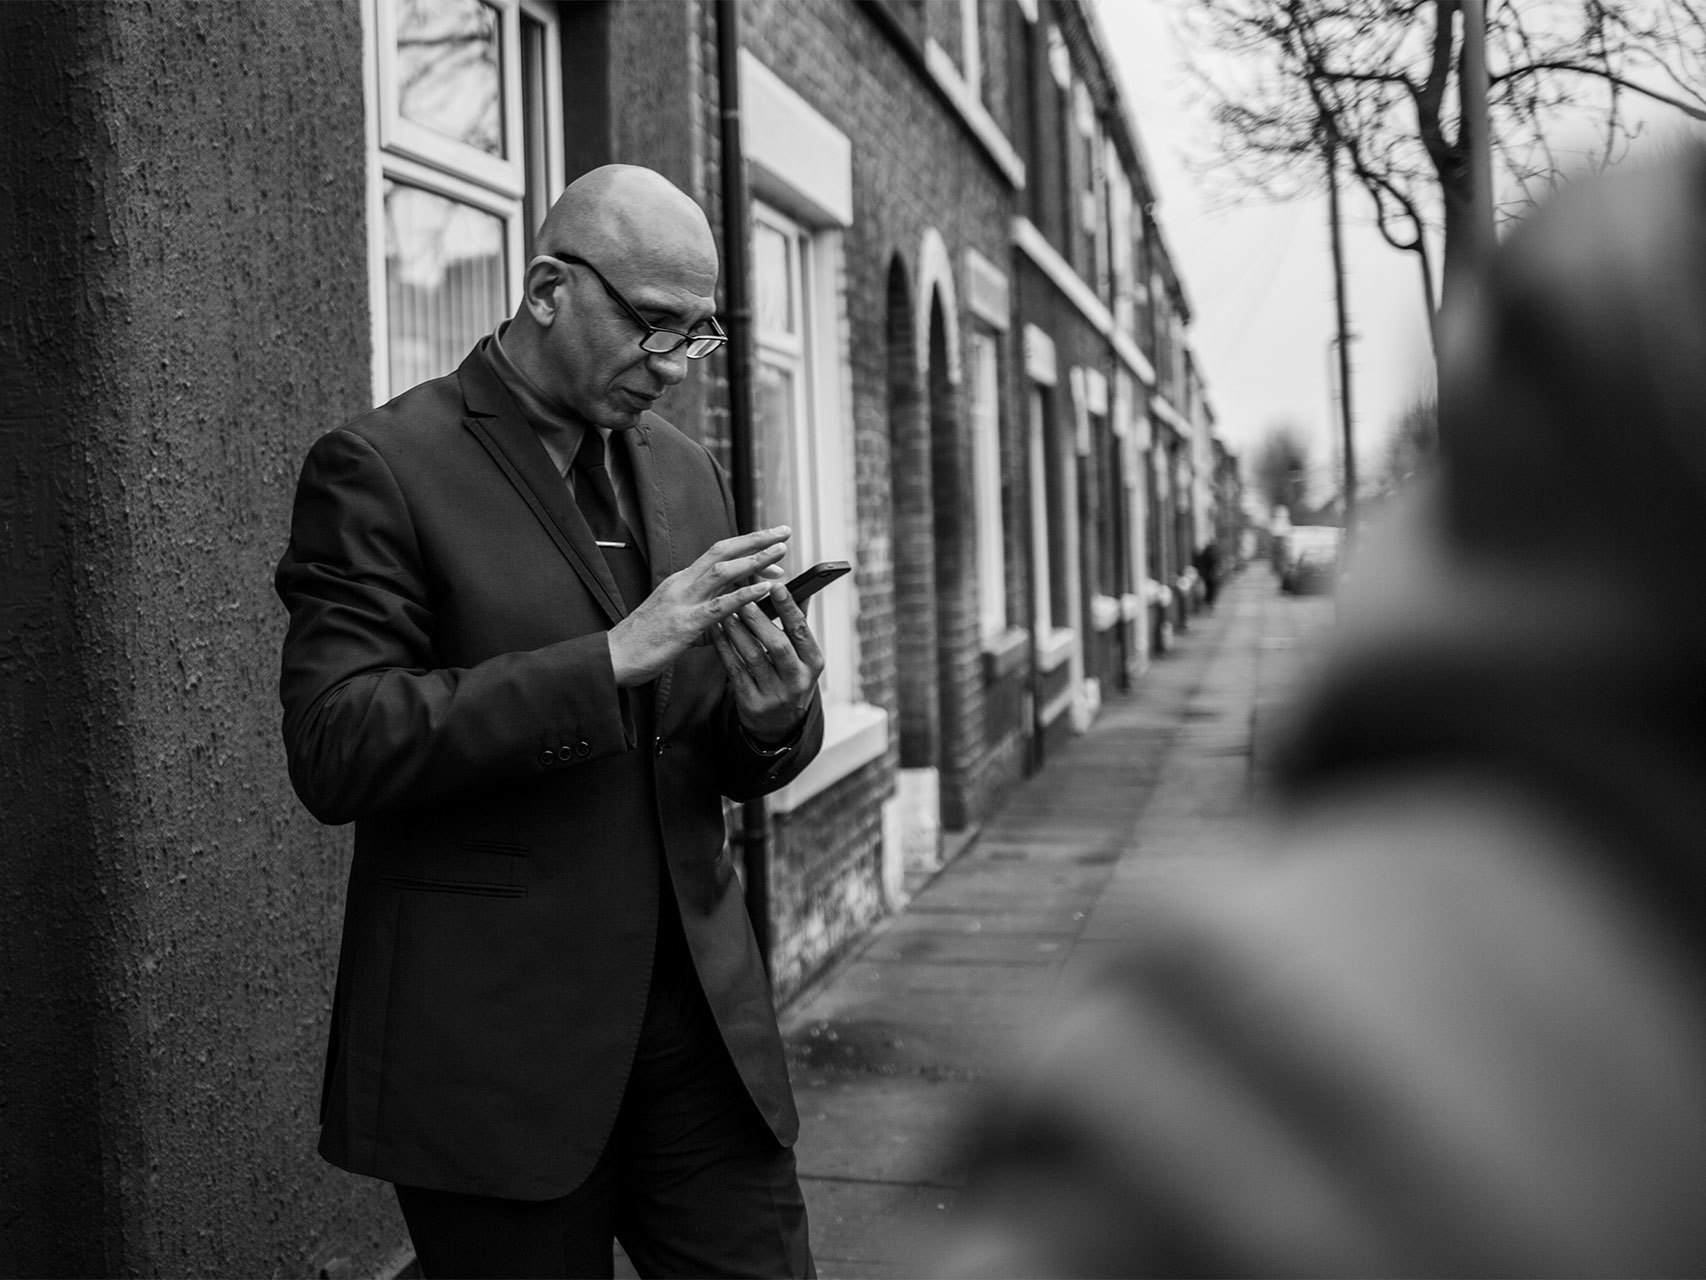 French consulta su móvil en un momento del paseo por el barrio.